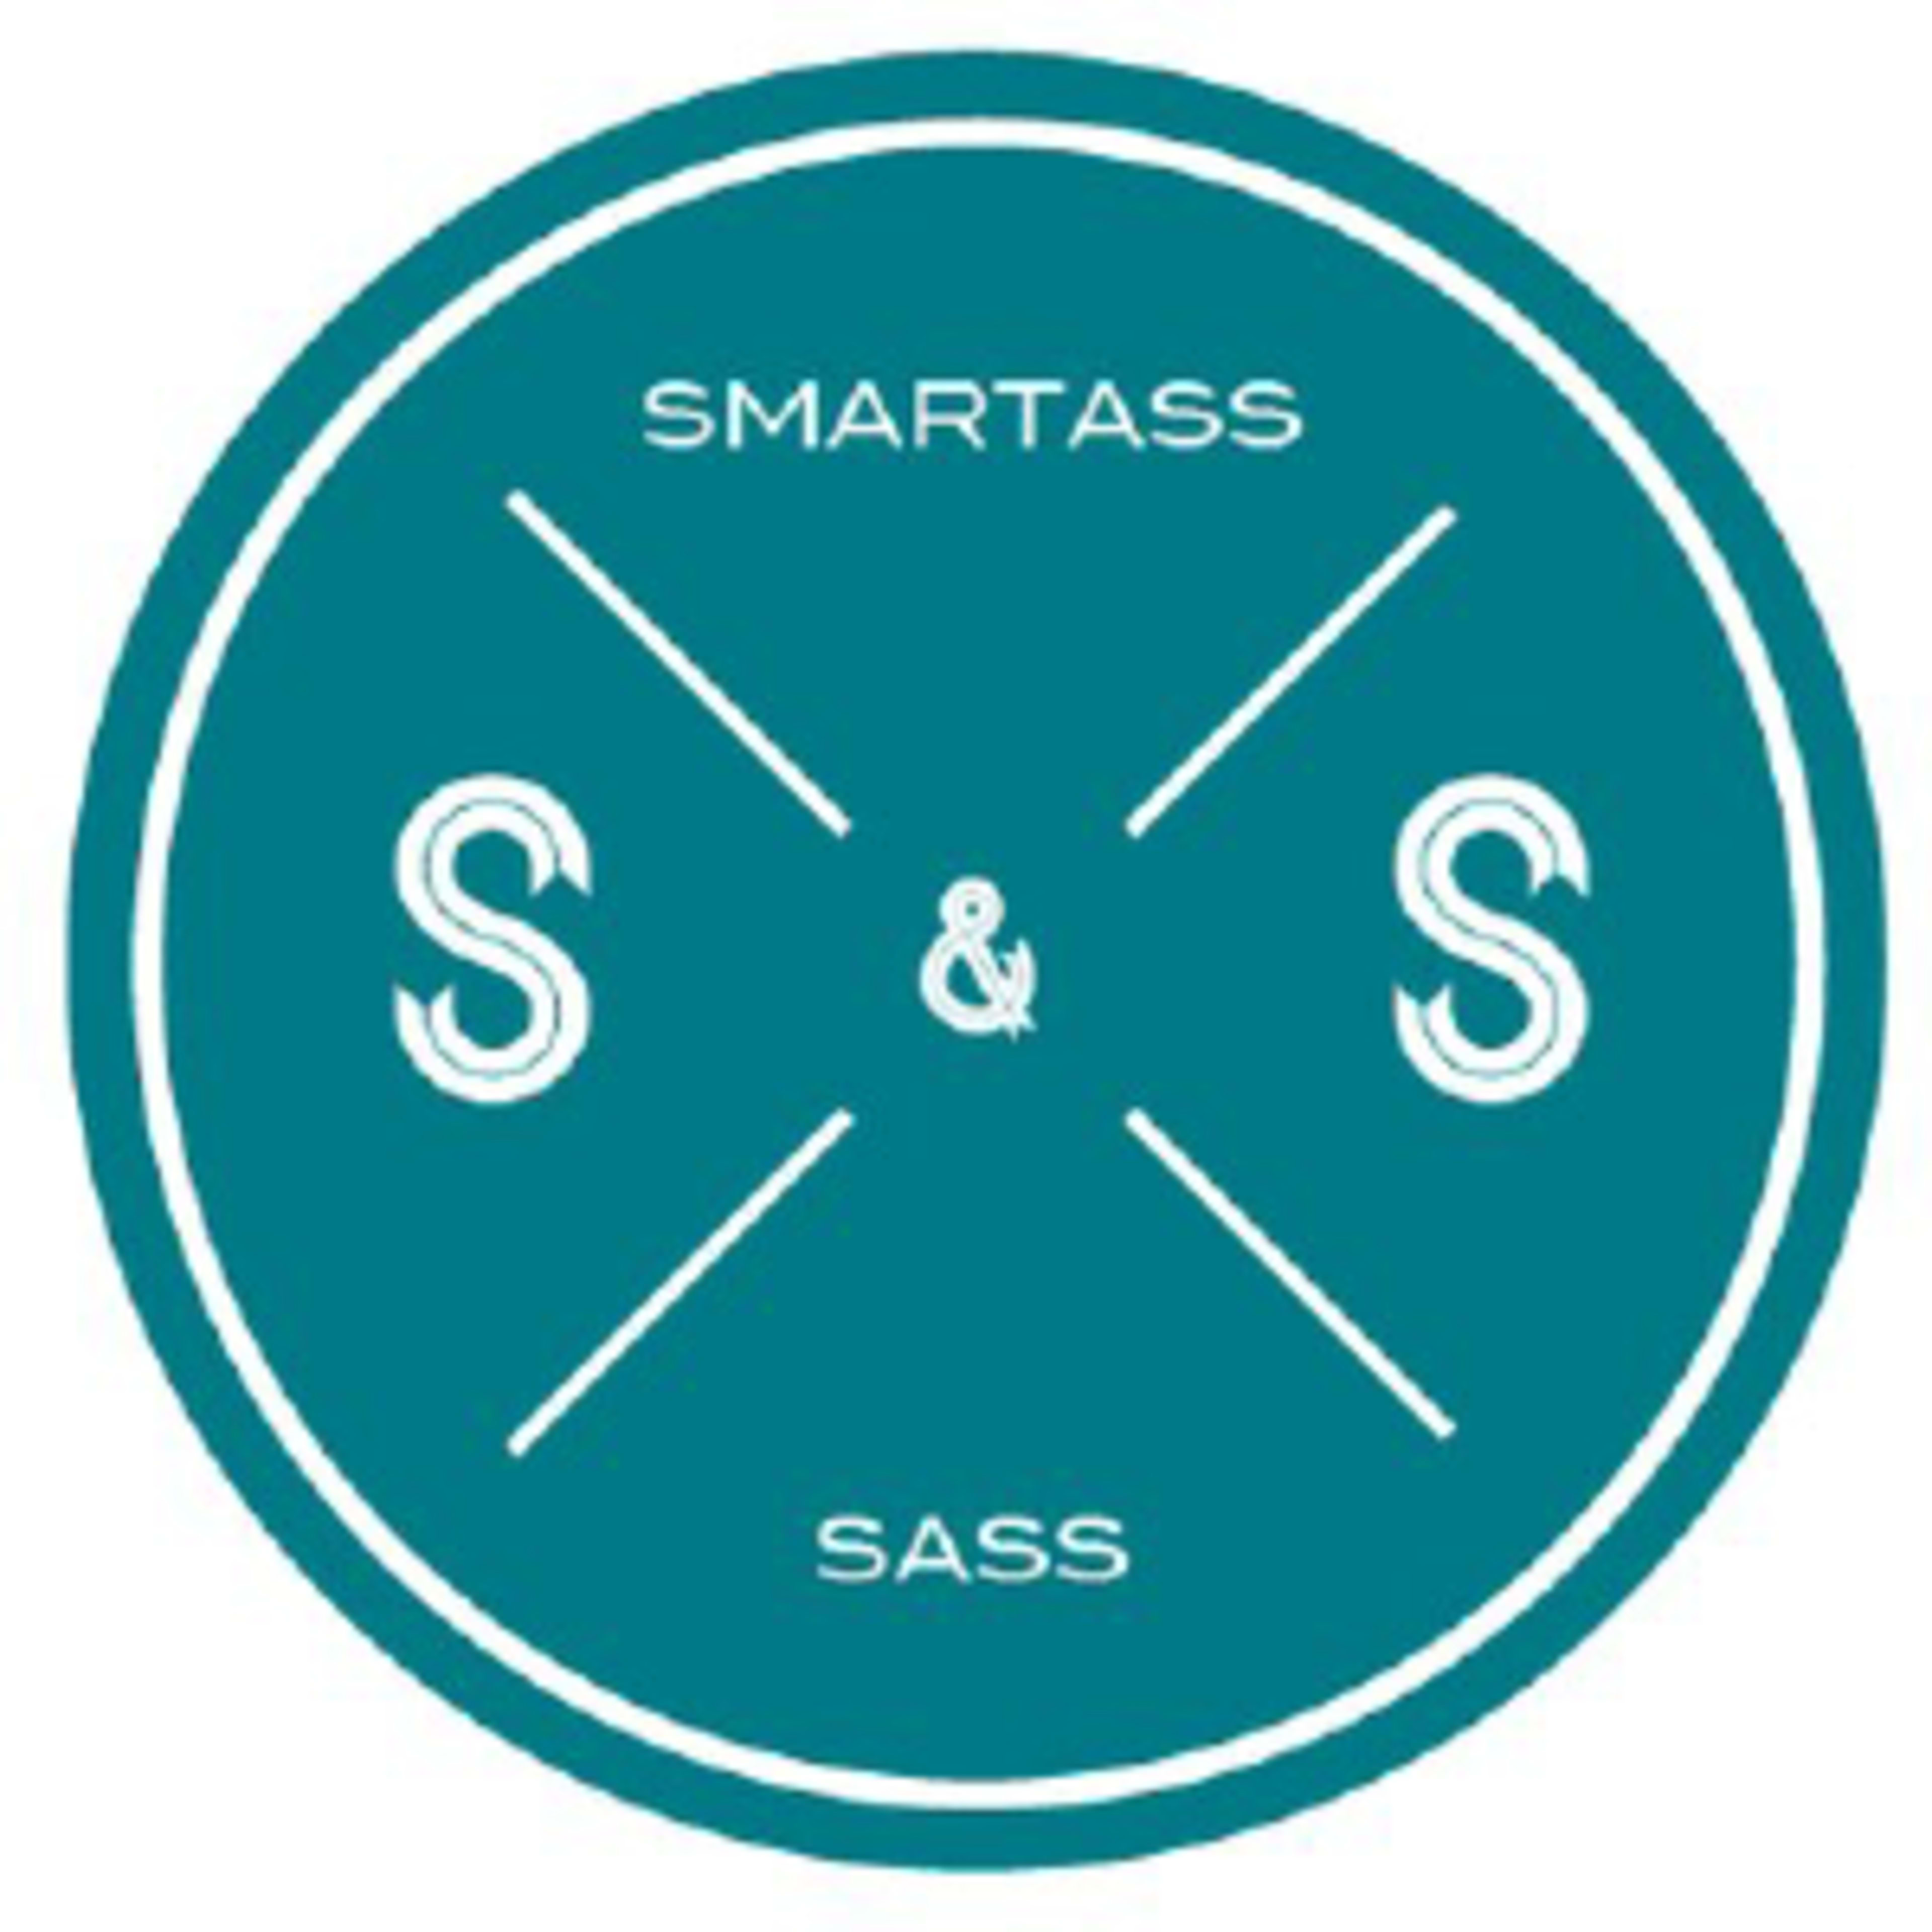 Smartass & Sass Code